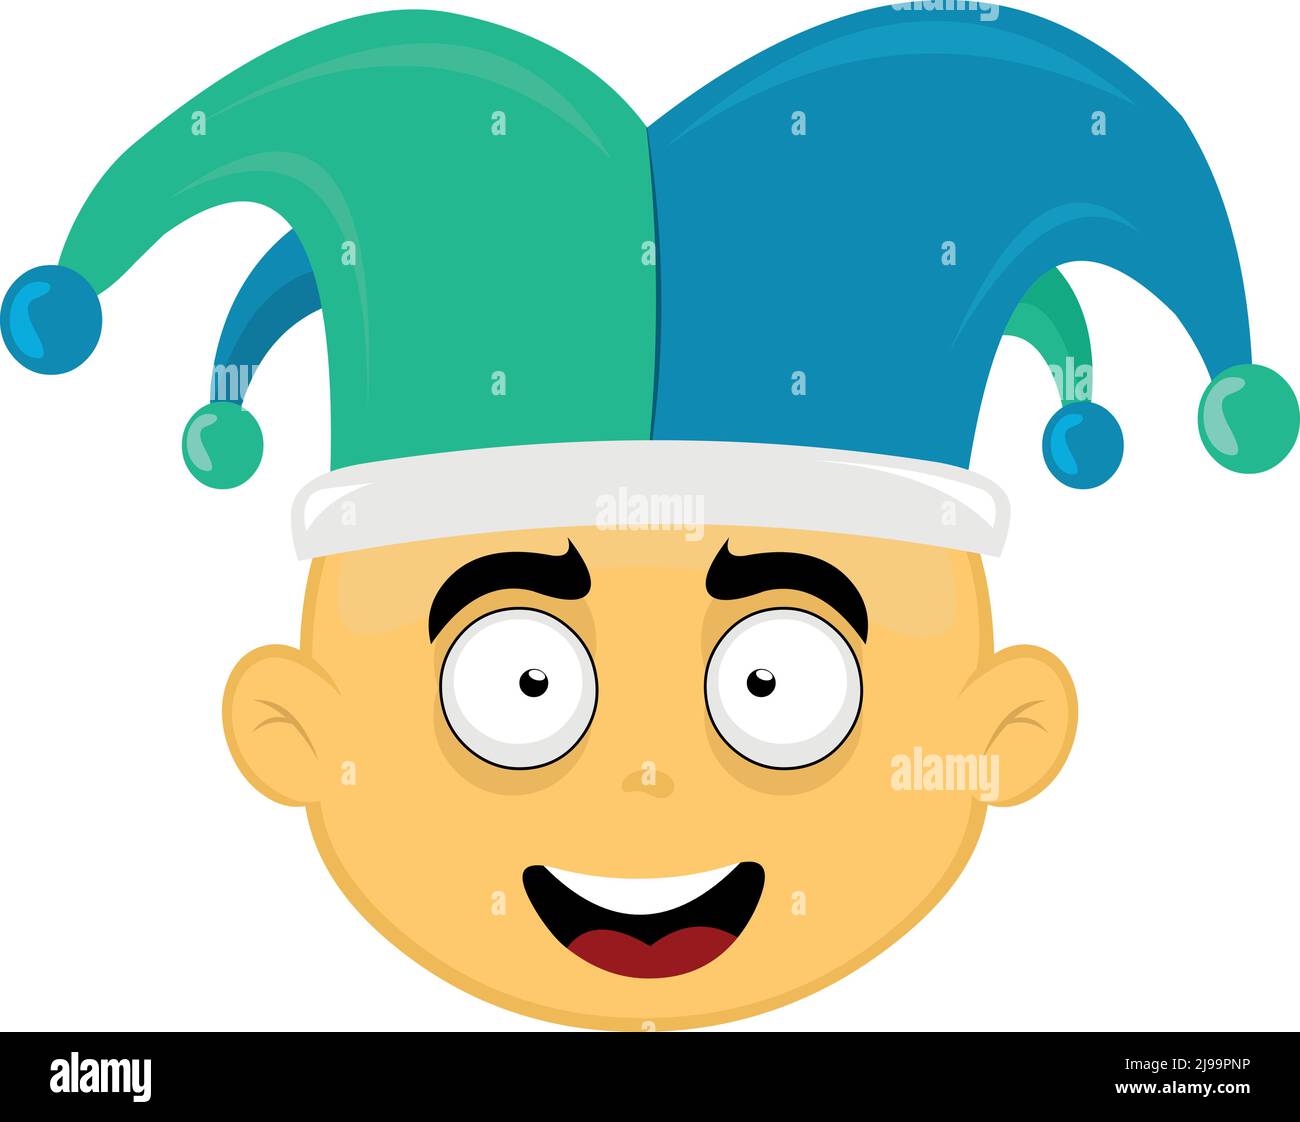 Illustration vectorielle du visage d'un personnage de dessin animé jaune avec un arlequin de jester sur sa tête Illustration de Vecteur